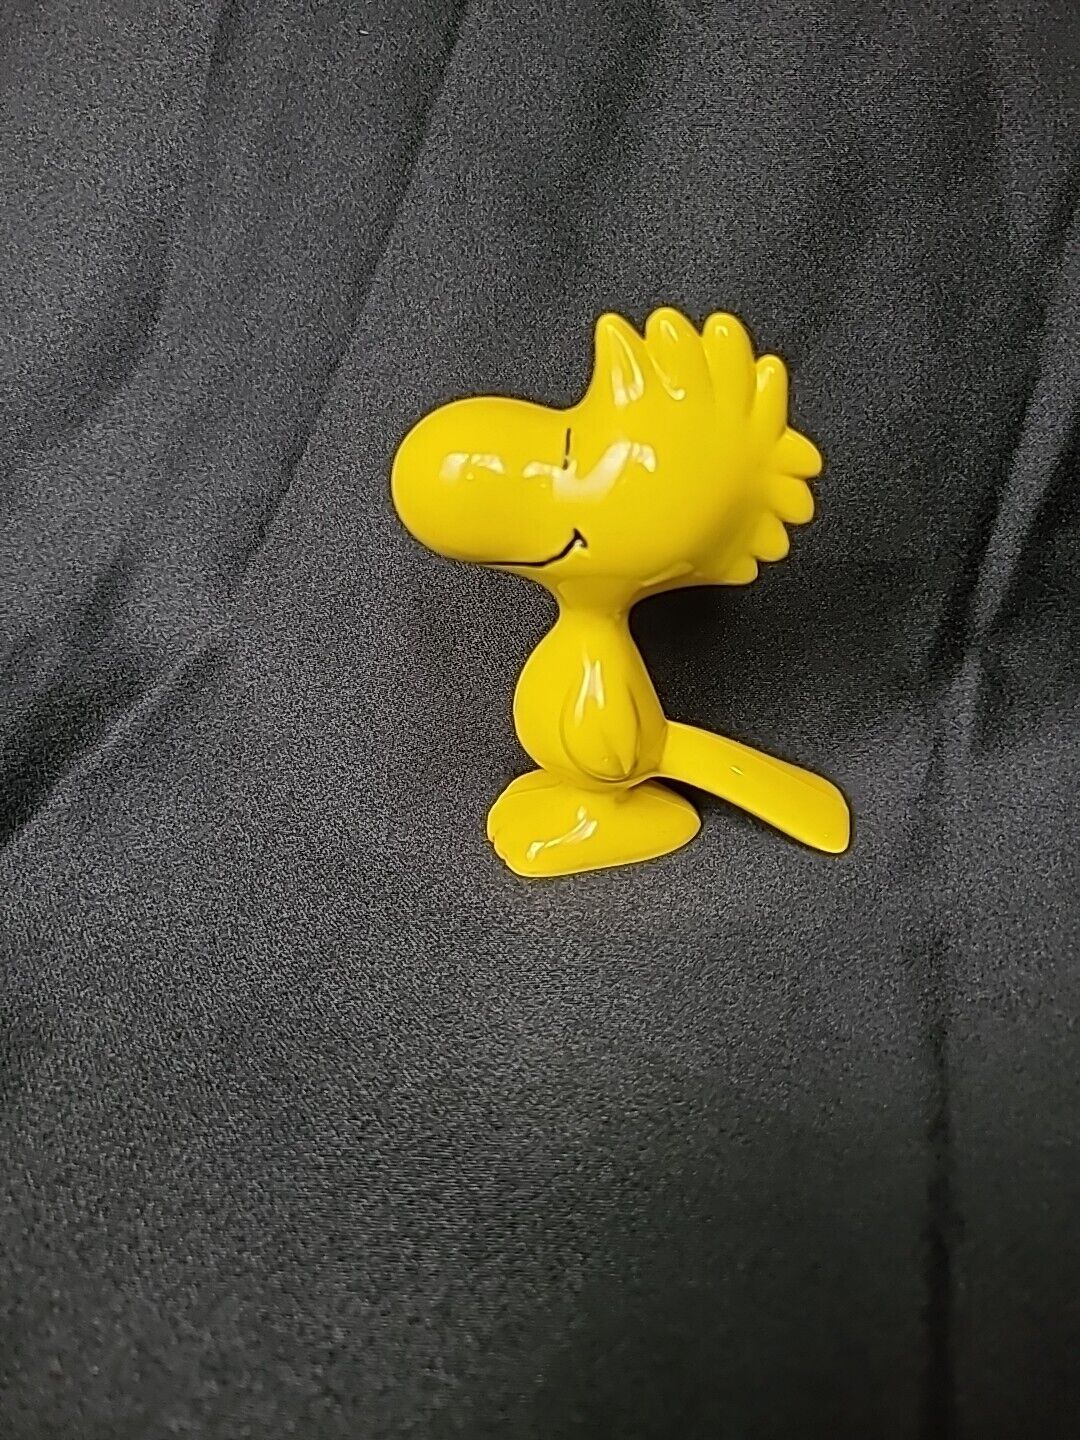 Woodstock Peanuts Hard plastic Figurine 3.75” ~` 1972